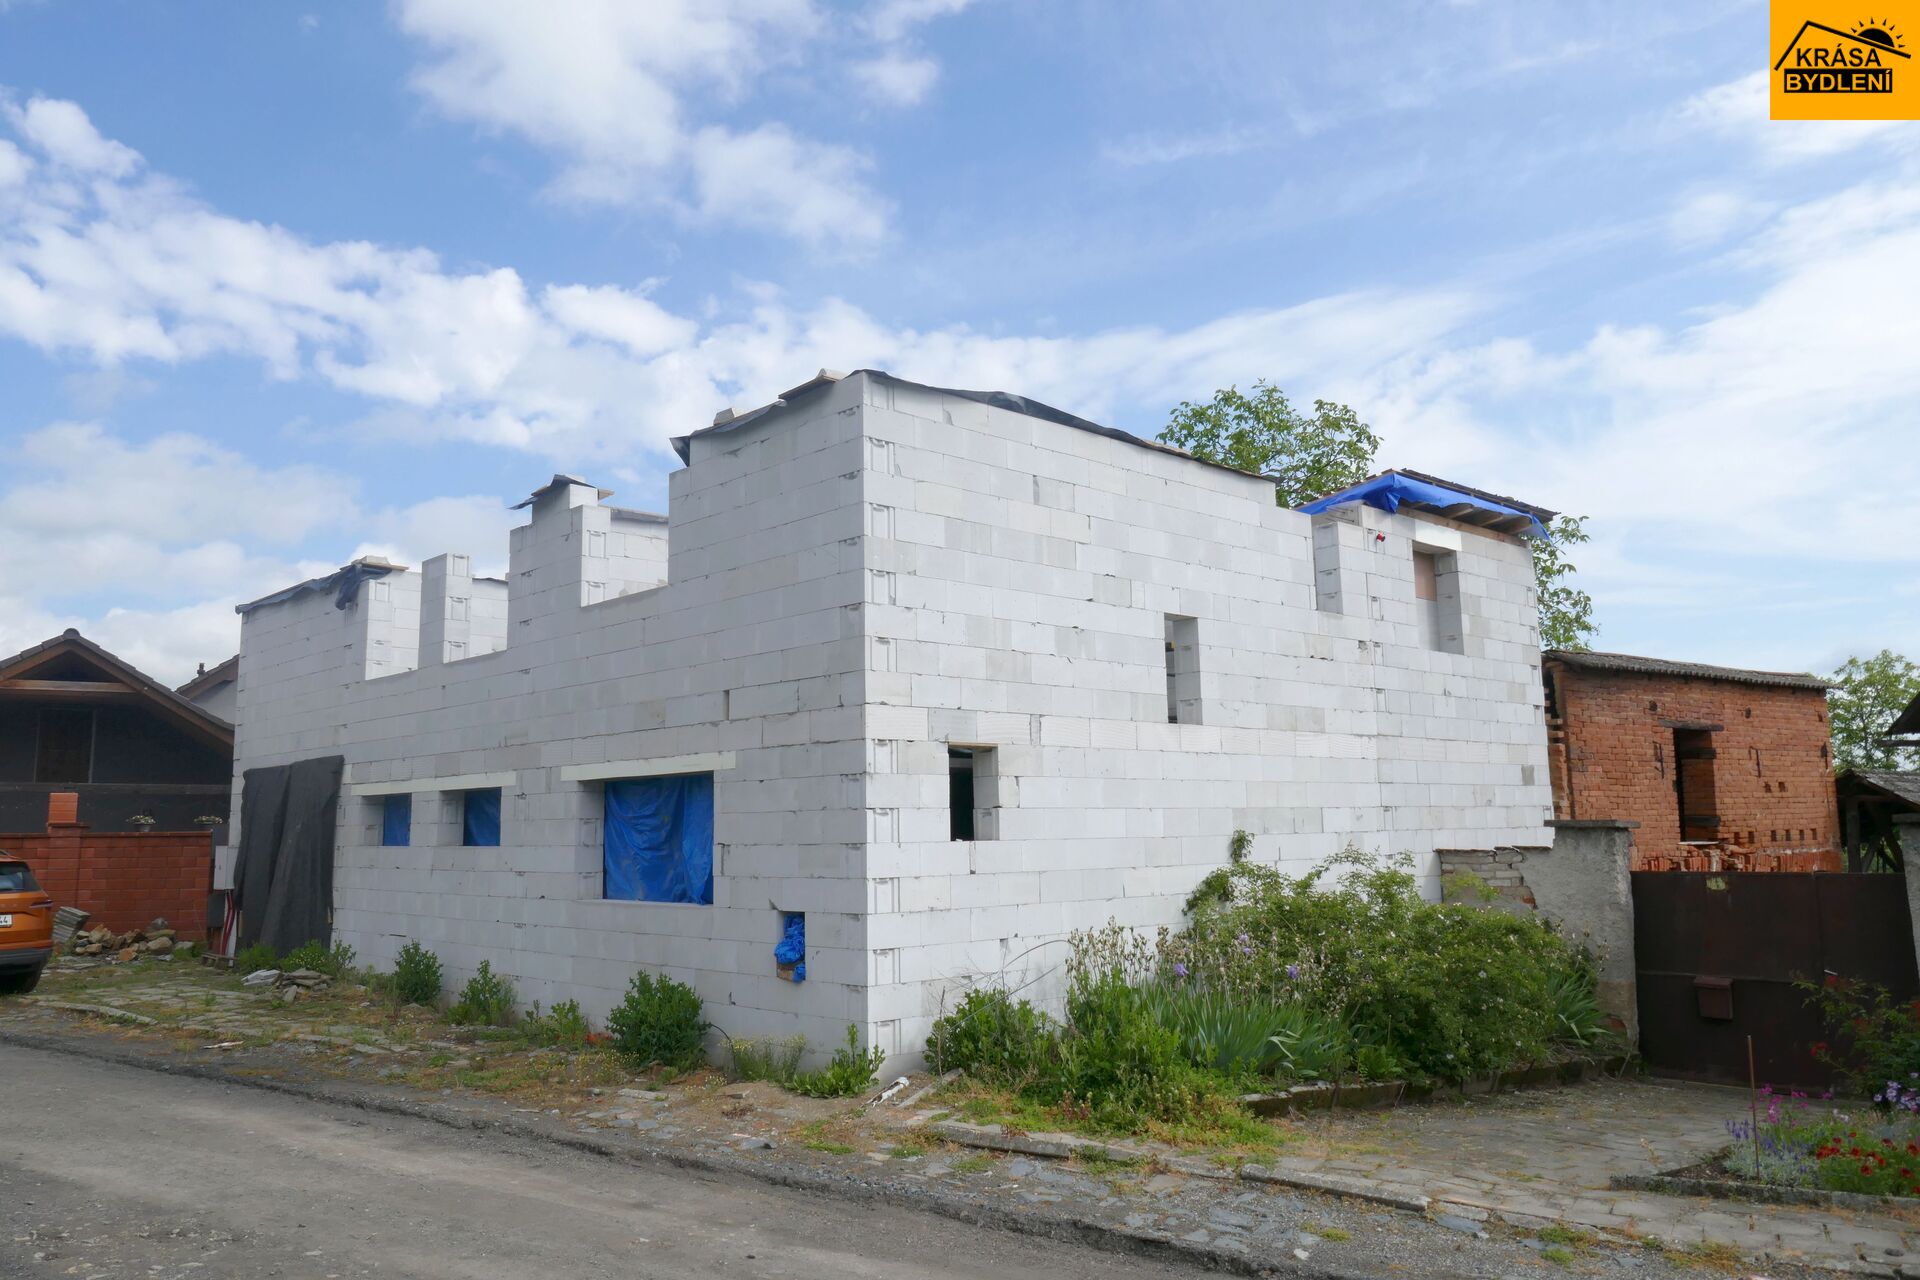 Prodej hrubé stavby 4+kk s garáží v Charvátech, Čertoryje